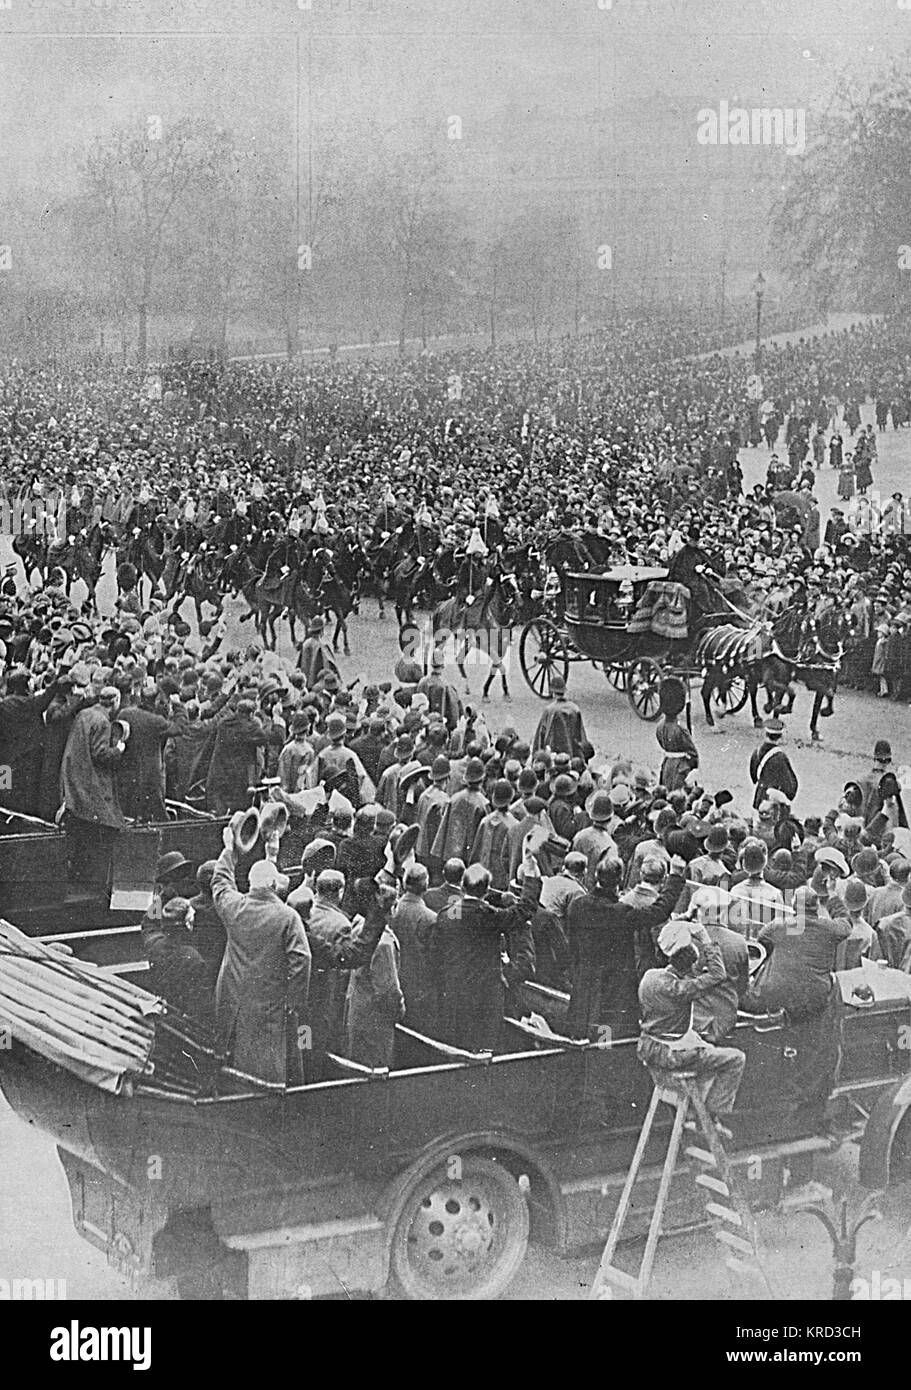 La foule immense des Horse Guards Parade en regardant l'époux, le Prince Albert, duc d'York et de ses frères, le Prince de Galles et Prince Henry (Duc de Gloucester) conduite en procession à l'abbaye de Westminster pour le mariage du duc d'york à Lady Elizabeth Bowes-Lyon en avril 1923. Date : 1923 Banque D'Images